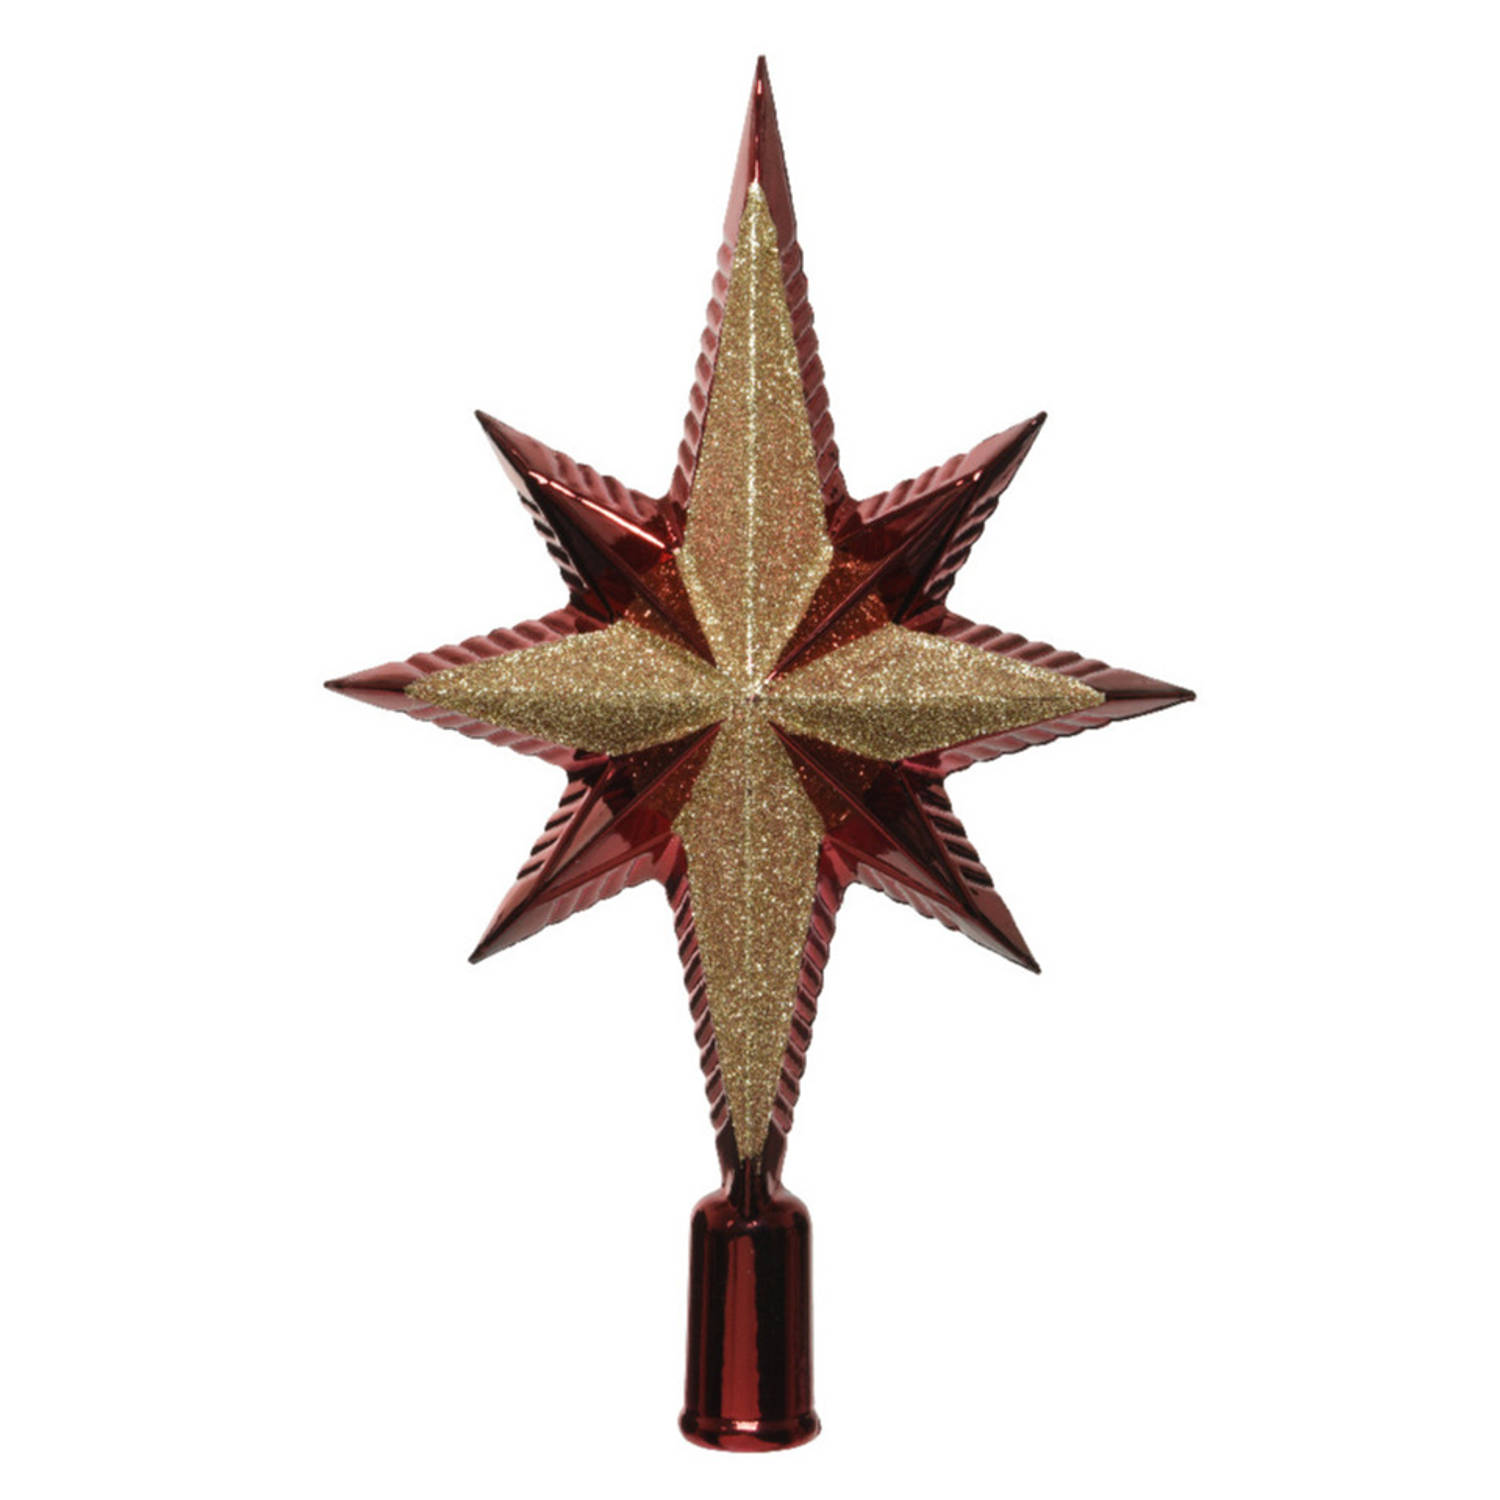 Decoris piek ster vorm kunststof donkerrood-goud 2,5 cm kerstboompieken